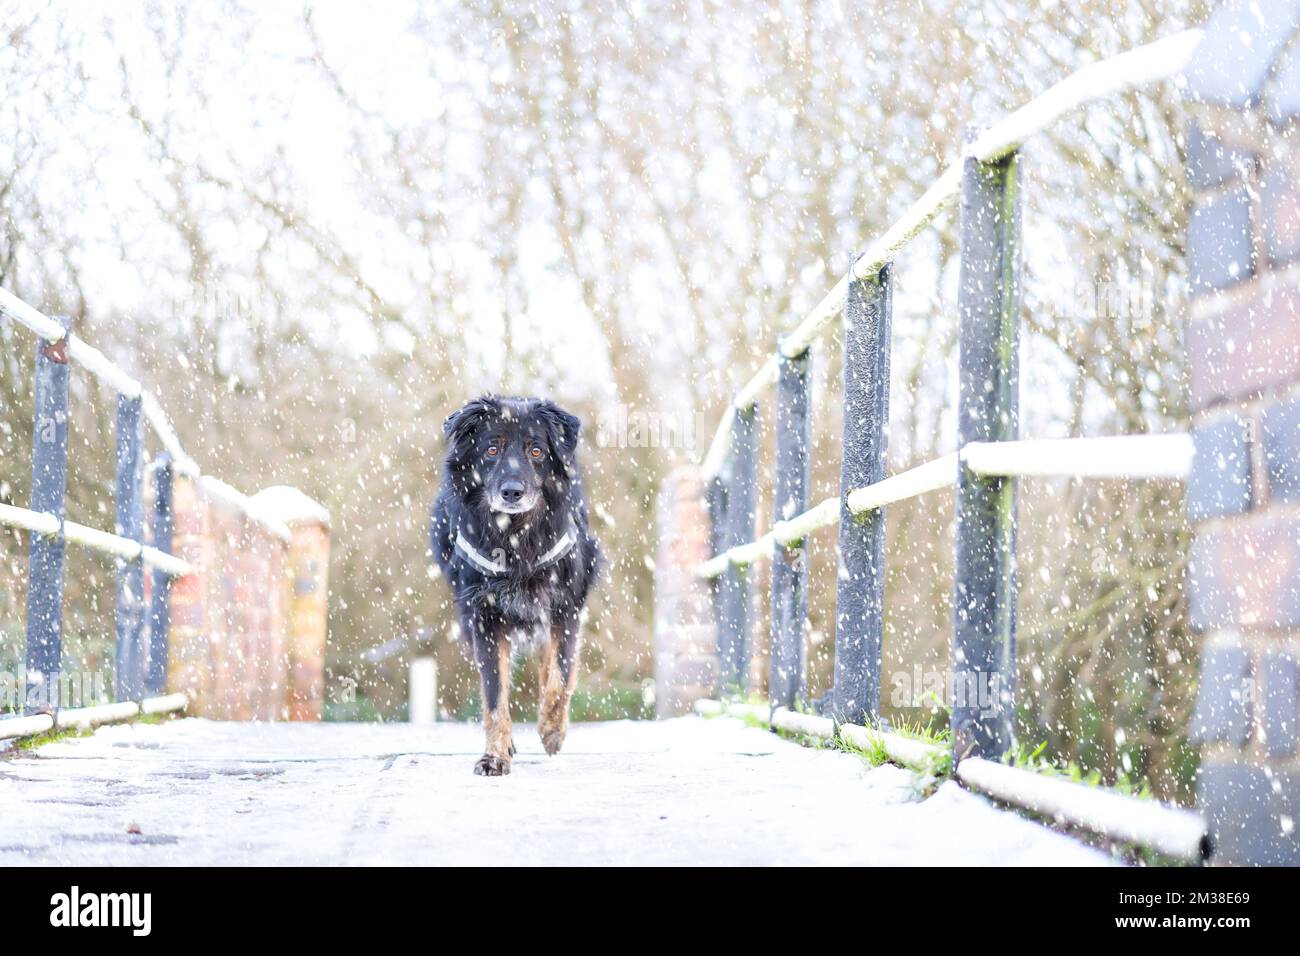 Vue de face d'un chien de compagnie (frontière de la croix de collie) en plein air dans la neige tombant en marche avant sur un pont de canal du Royaume-Uni, en regardant la caméra. Banque D'Images